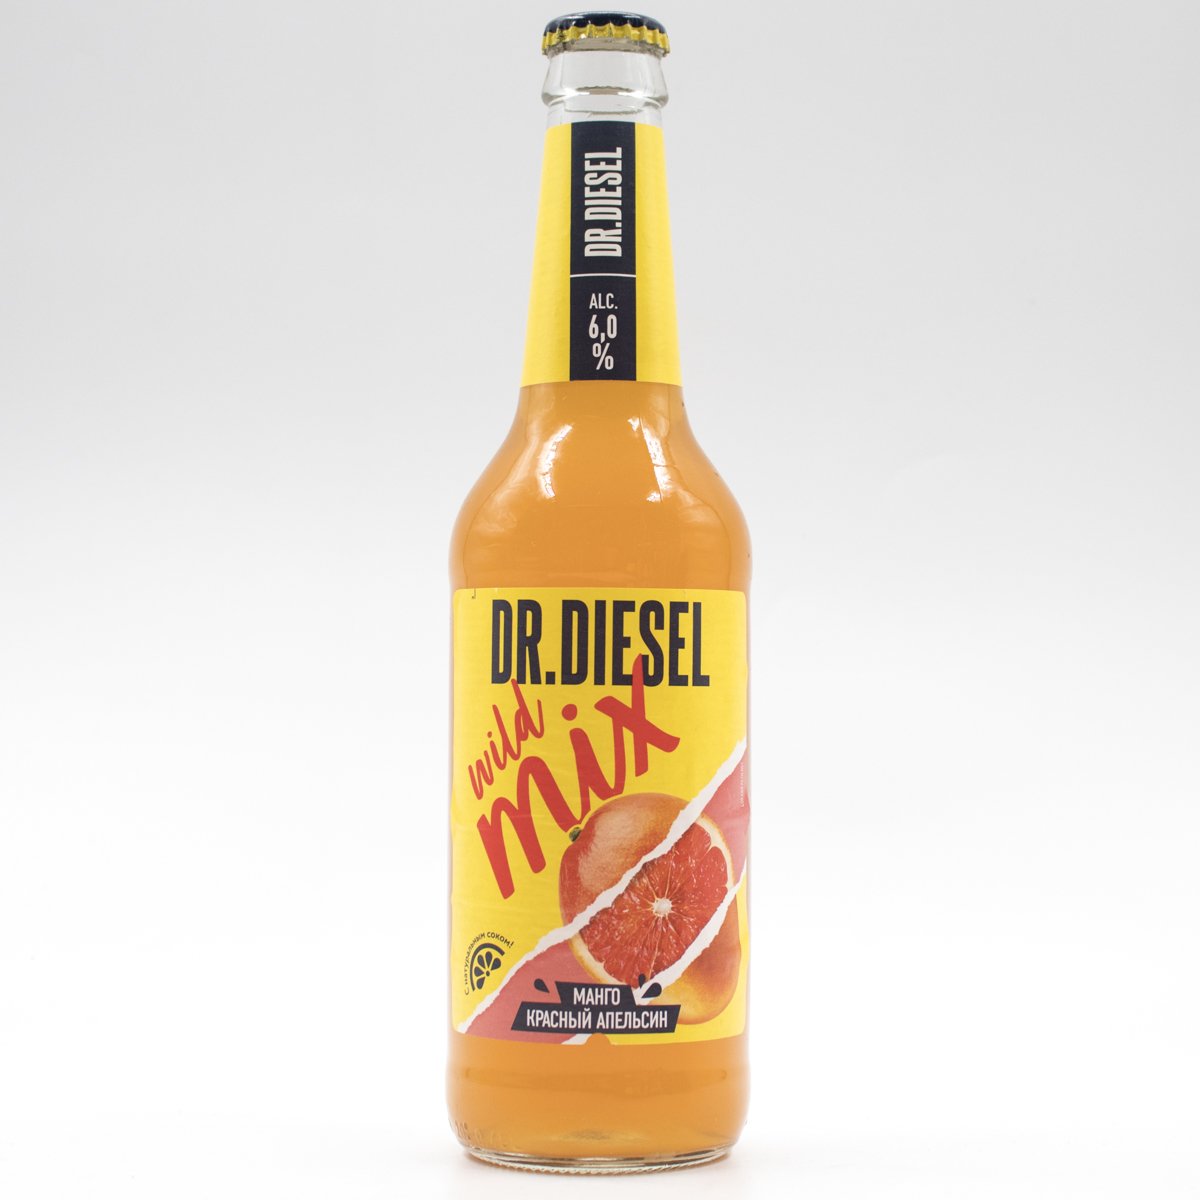 Дизель пиво вкусы. Пивной напиток доктор дизель манго и красный апельсин 6 0.45л. Dr Diesel пиво манго красный апельсин. Dr Diesel пиво. Пивной напиток Dr/ Diesel Mango.